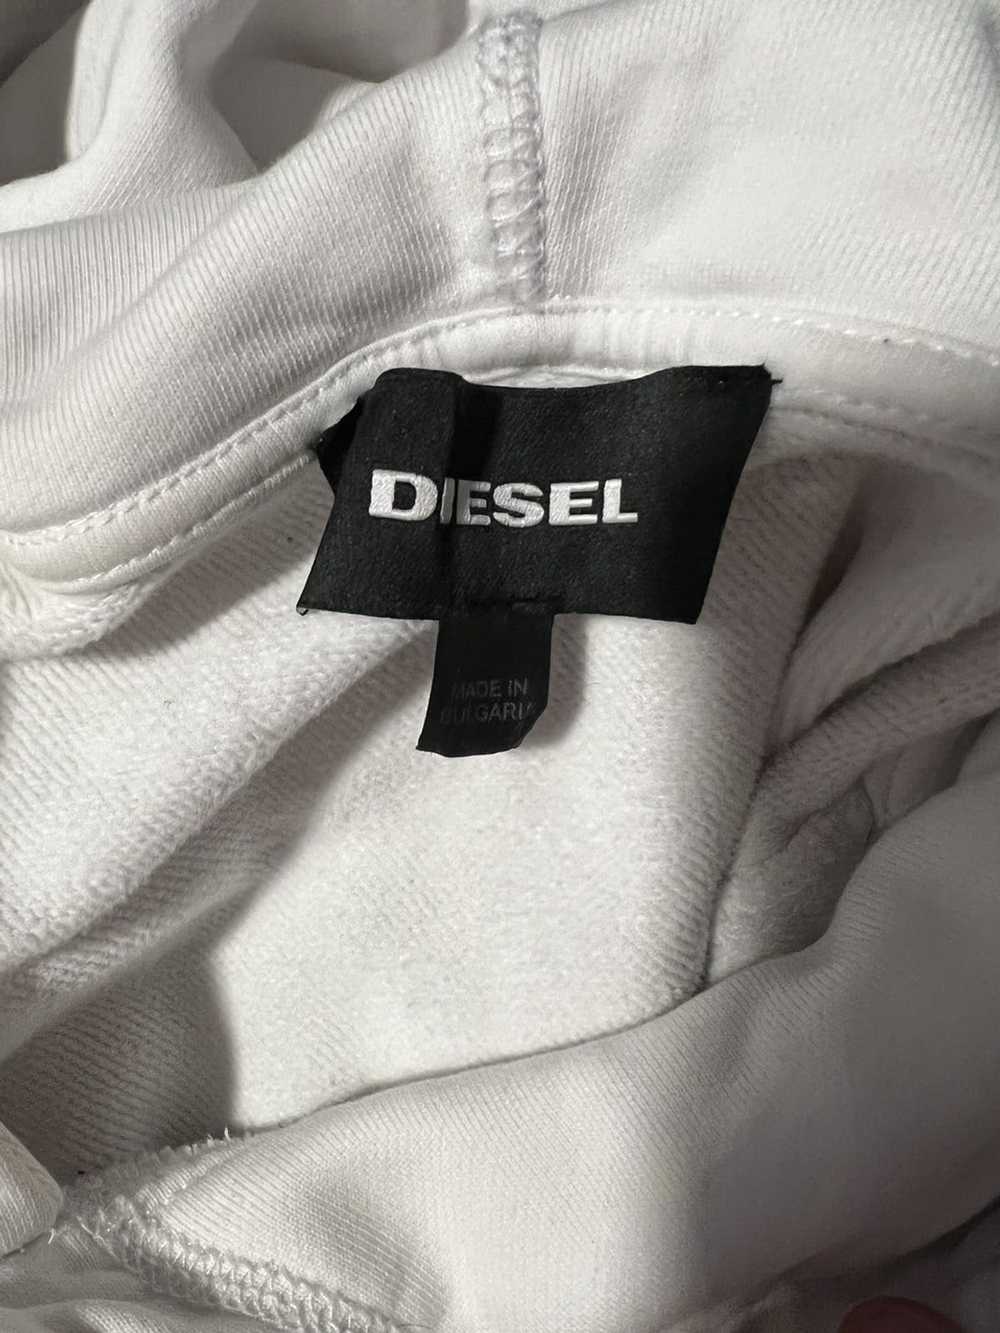 Diesel Diesel hoodie - image 2